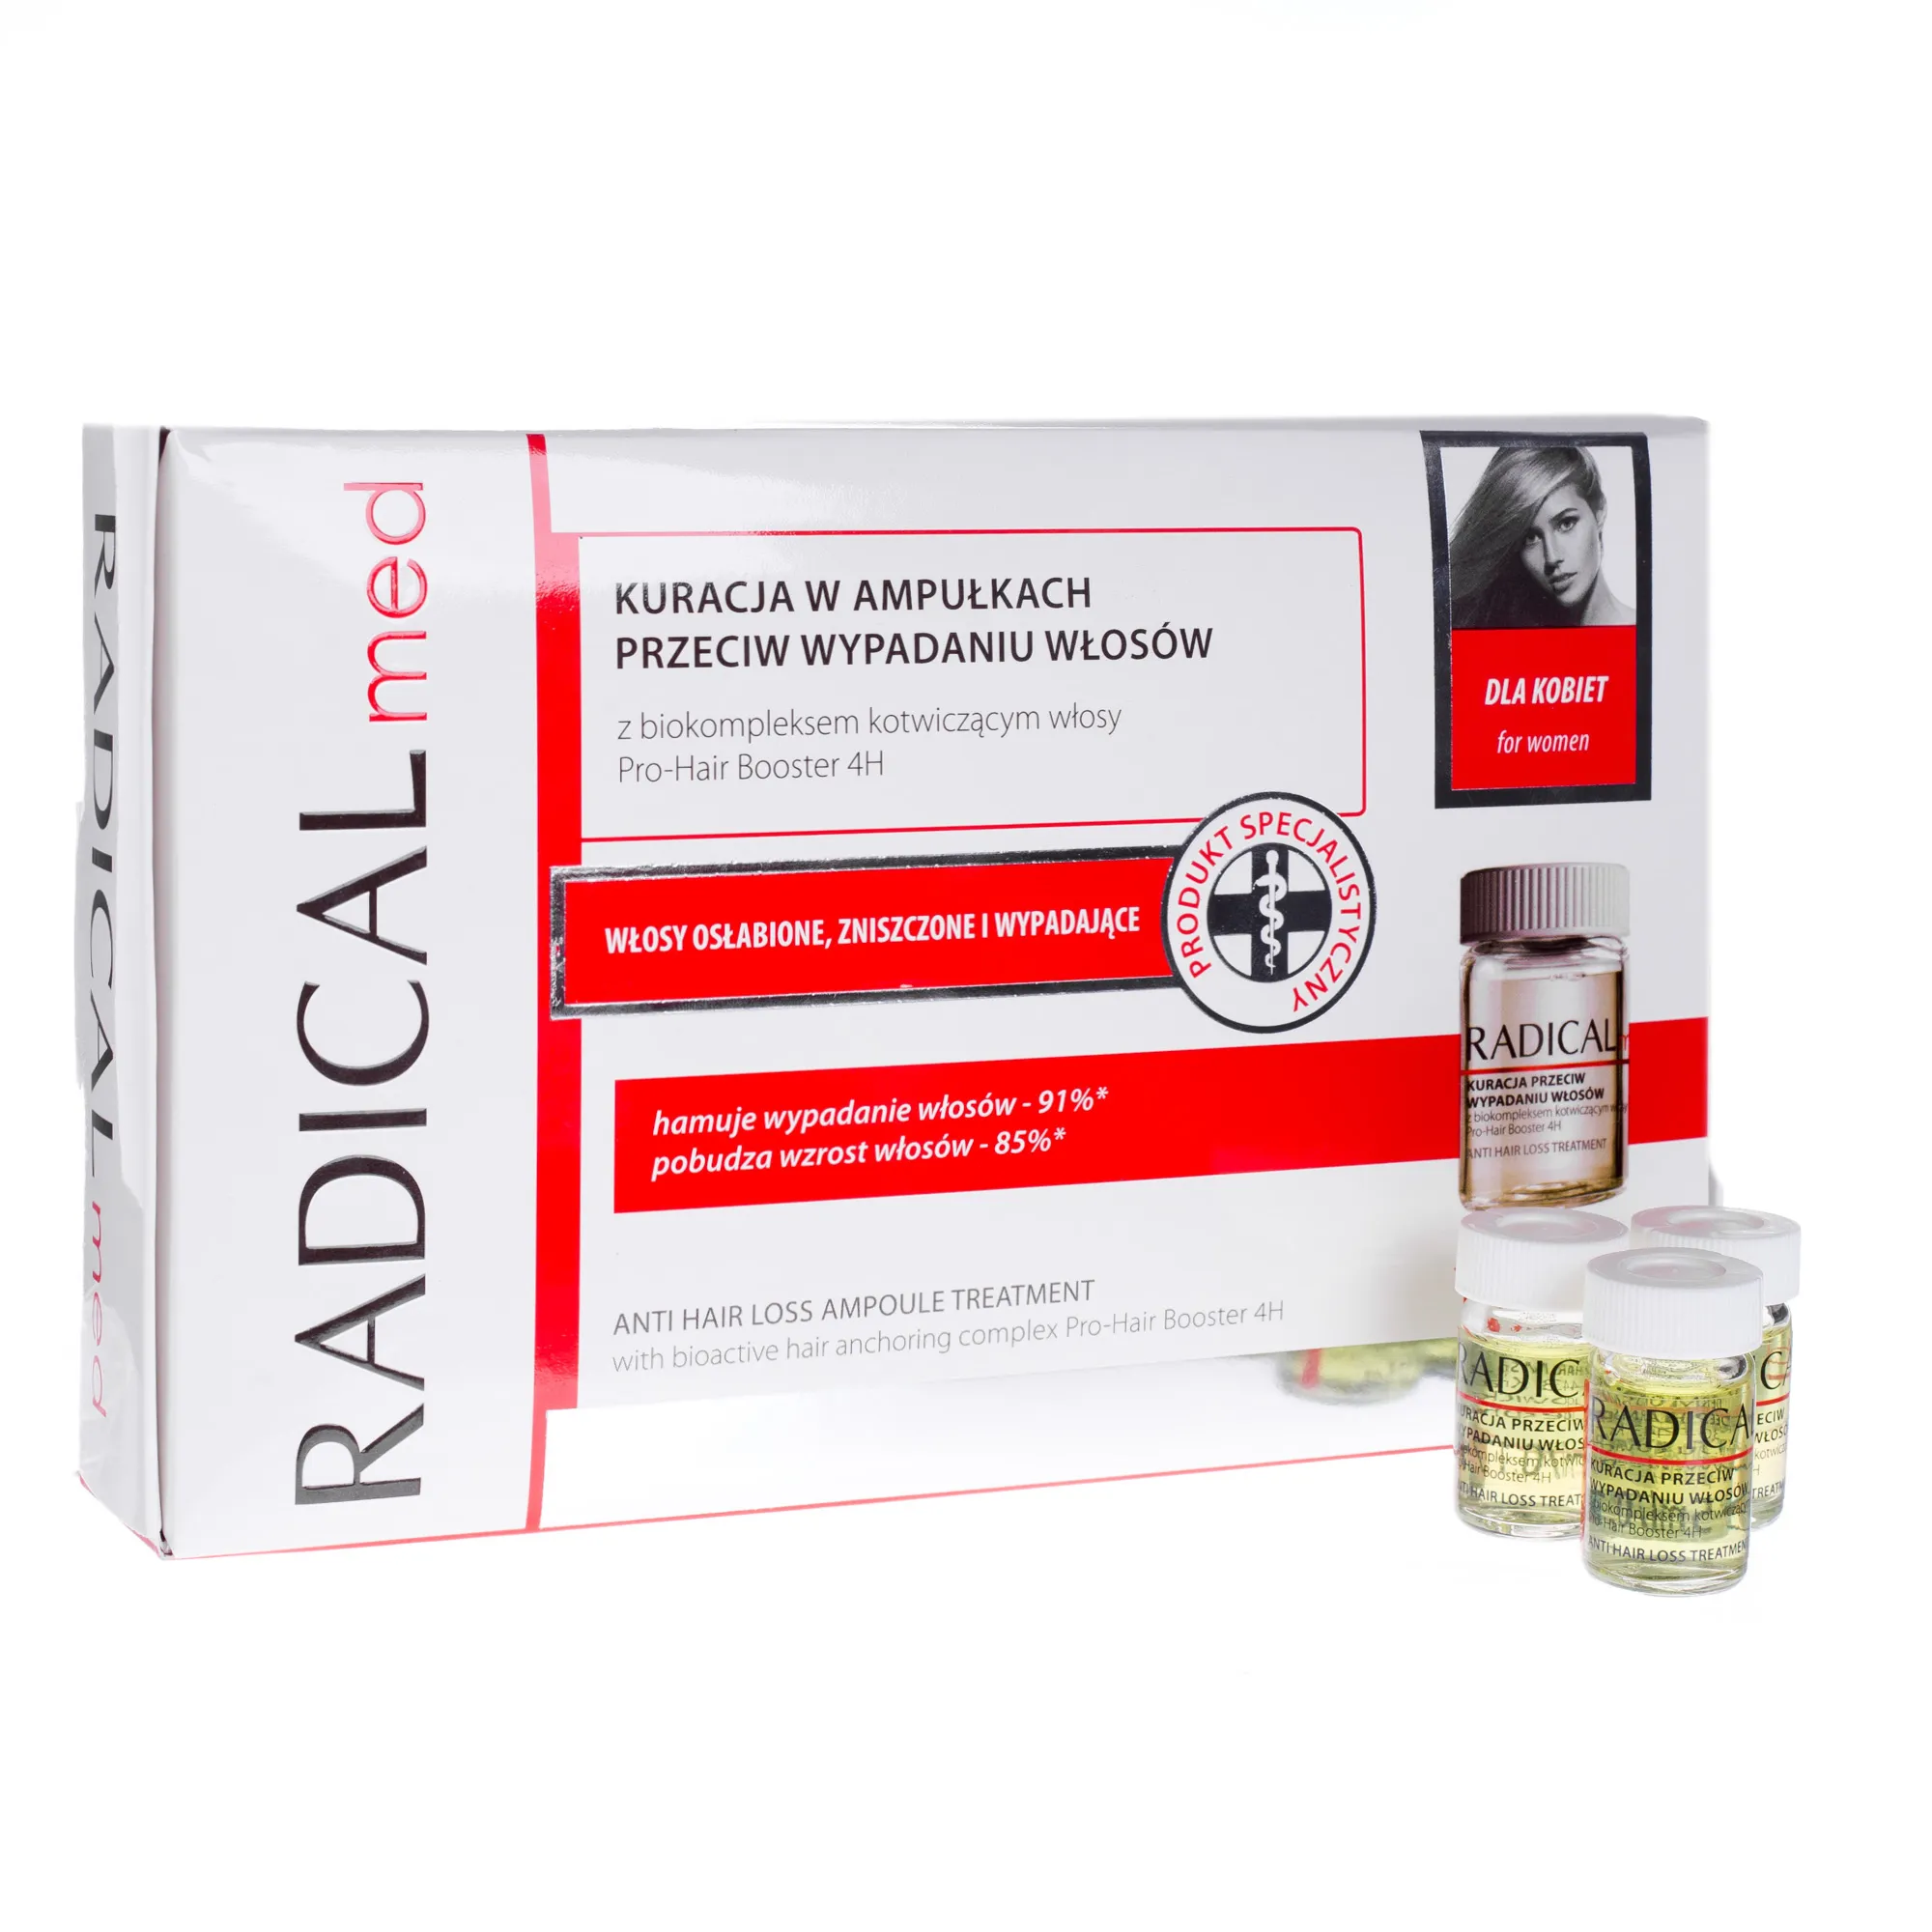 Radical Med Kuracja w ampułkach przeciw wypadaniu włosów – ampułki dla kobiet, 15 ampułek po 5 ml